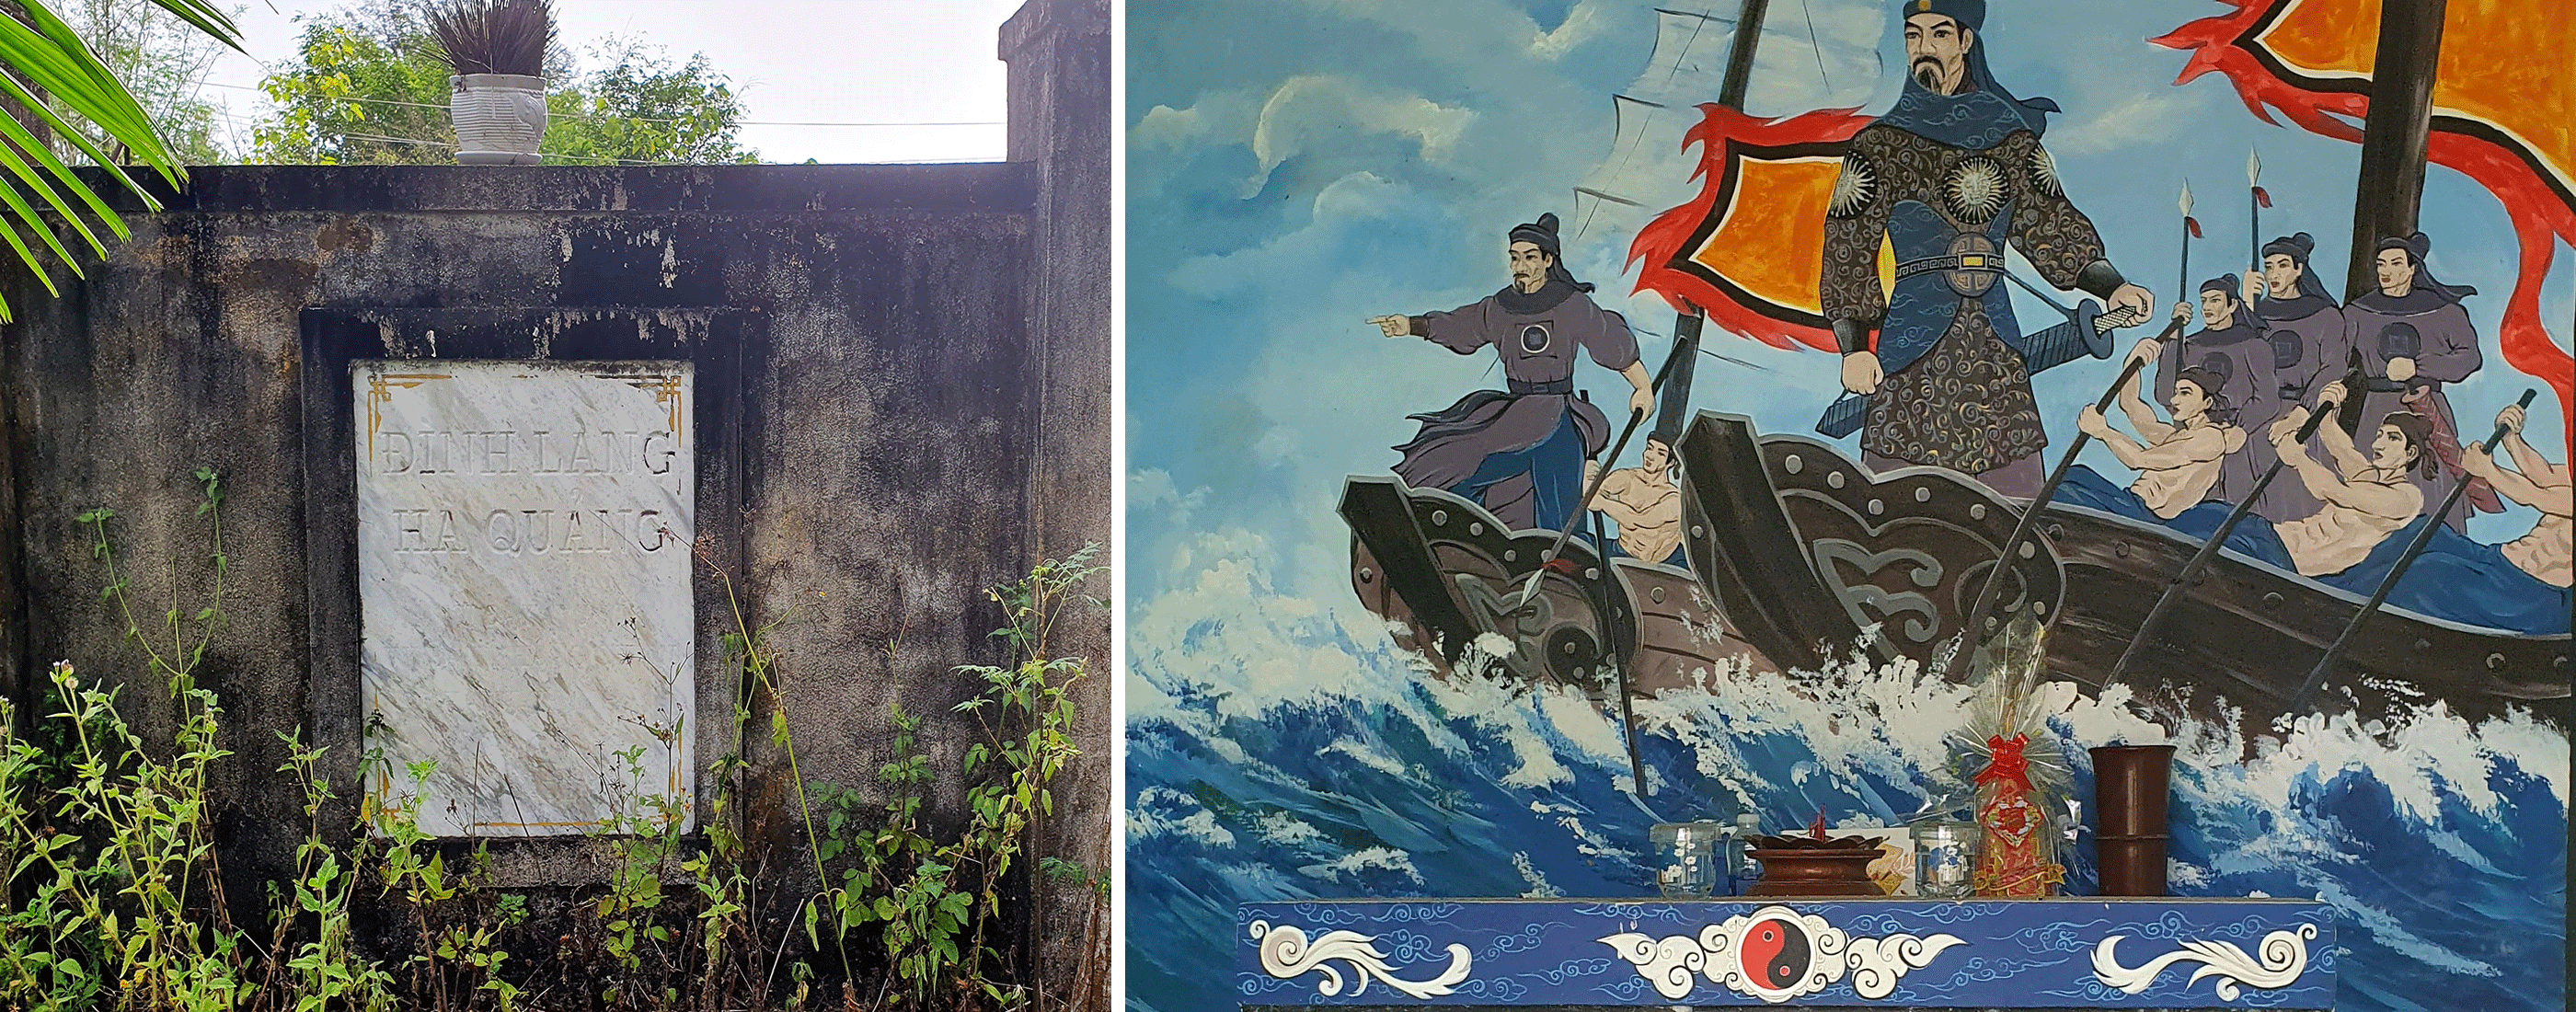 Trong khi đình làng Hà Quảng chỉ còn tấm bia lưu niệm (ảnh trái) thì miếu Ông Hùm bên cạnh đã được khôi phục với bức tranh mô phỏng hành động khí khái của Đô đốc Đinh Văn Bá ngày trước. Ảnh: V.T.L